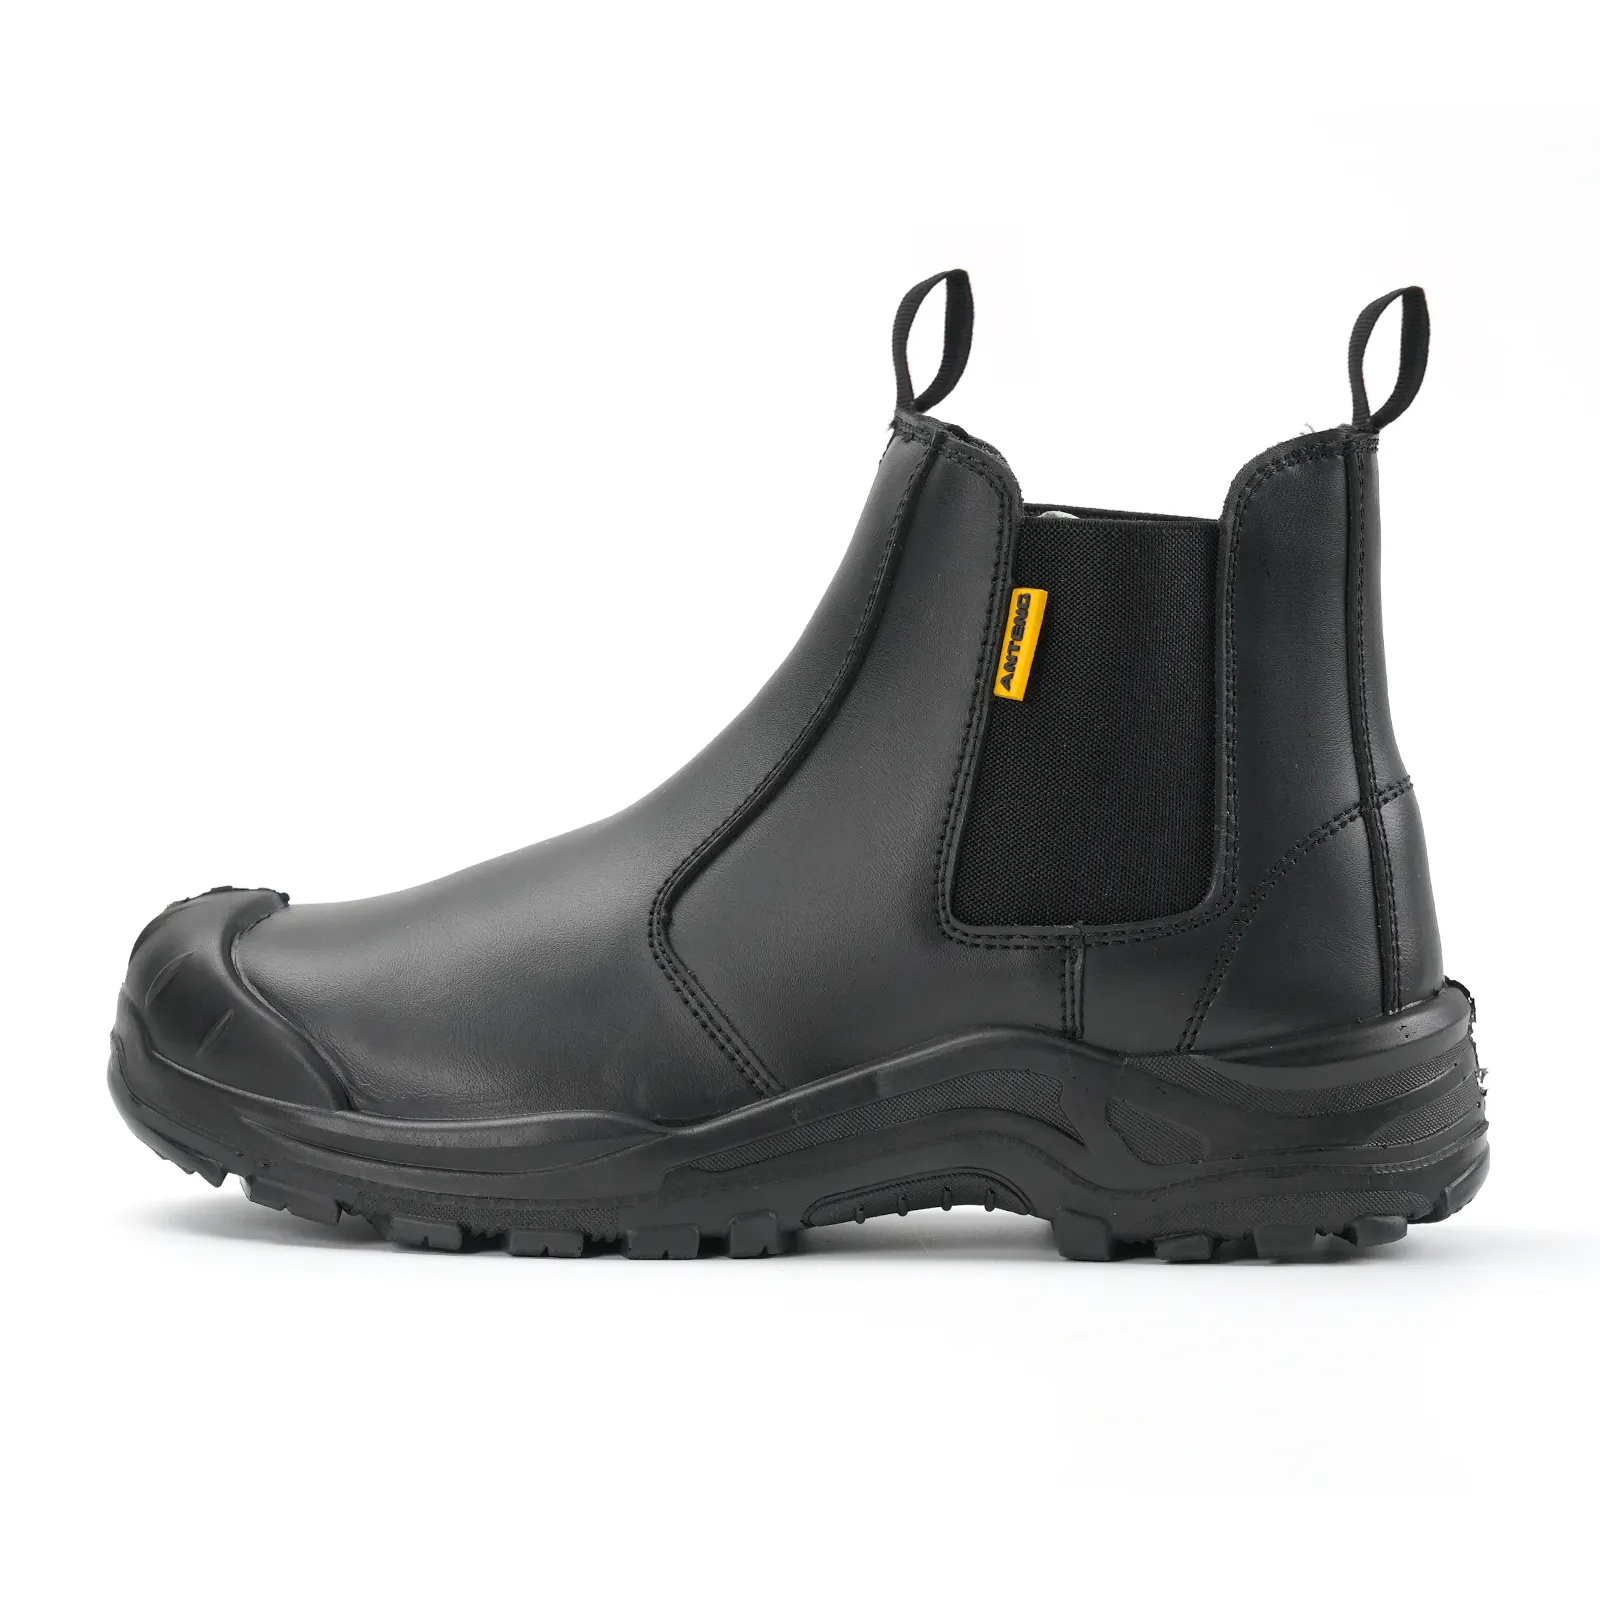 Anteng - Sapatos de segurança de couro genuíno industrial, botas antiderrapantes com sola antiestática e anti-riscos, bota de trabalho de biqueira de aço, corte alto casual Anteng